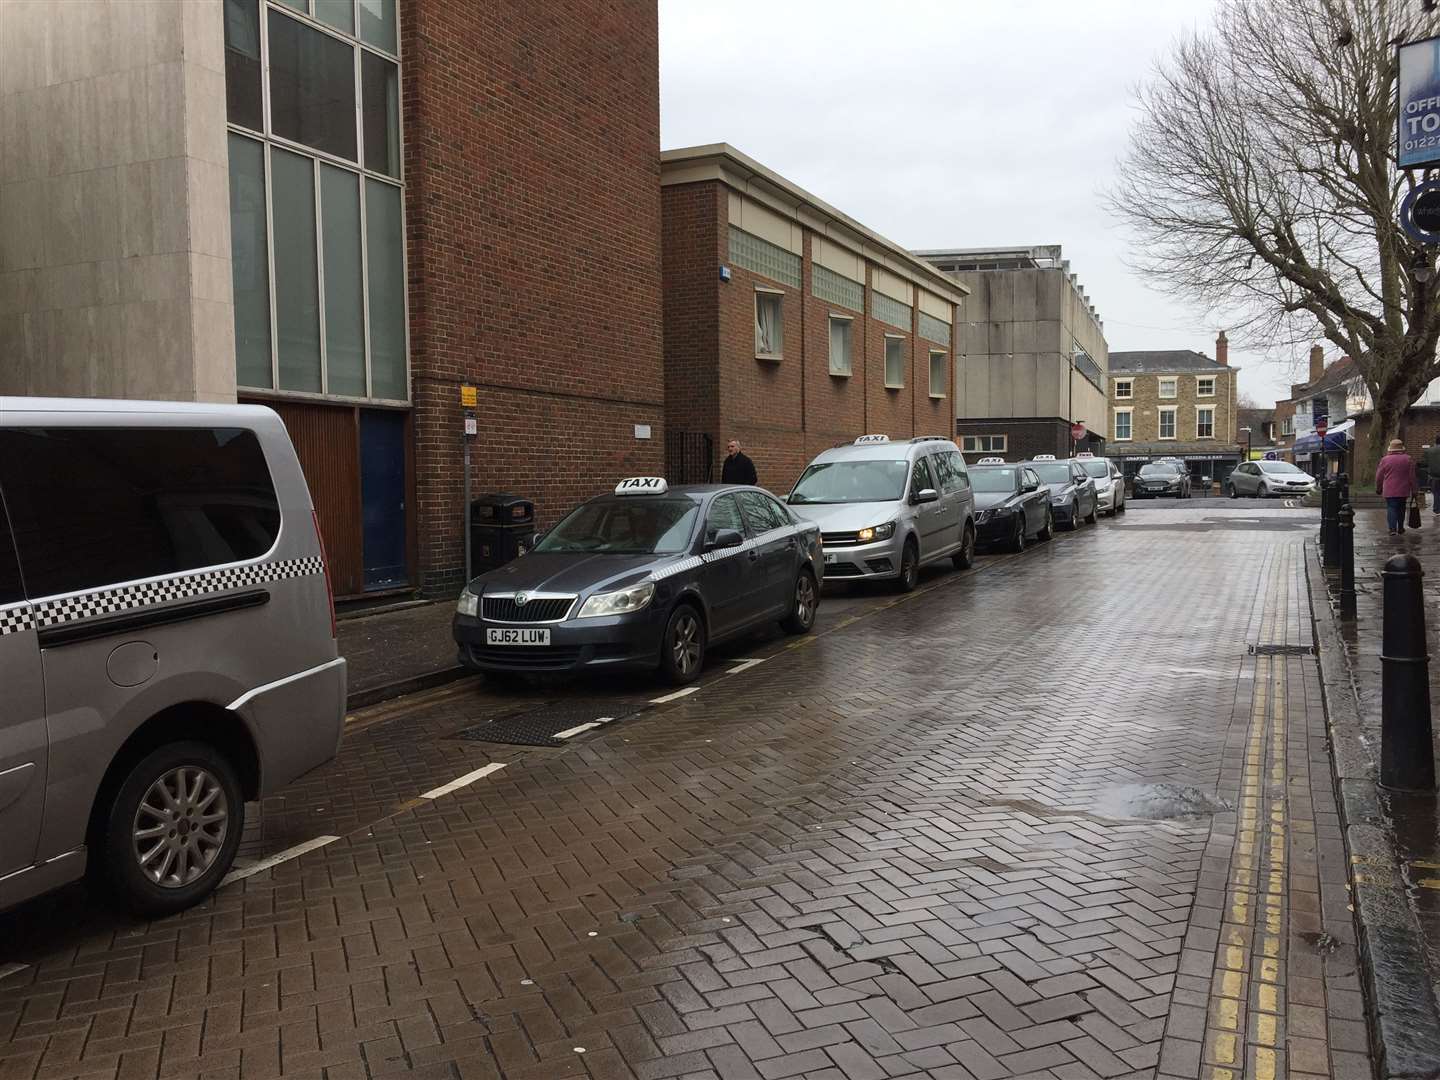 The taxi rank in Canterbury Lane